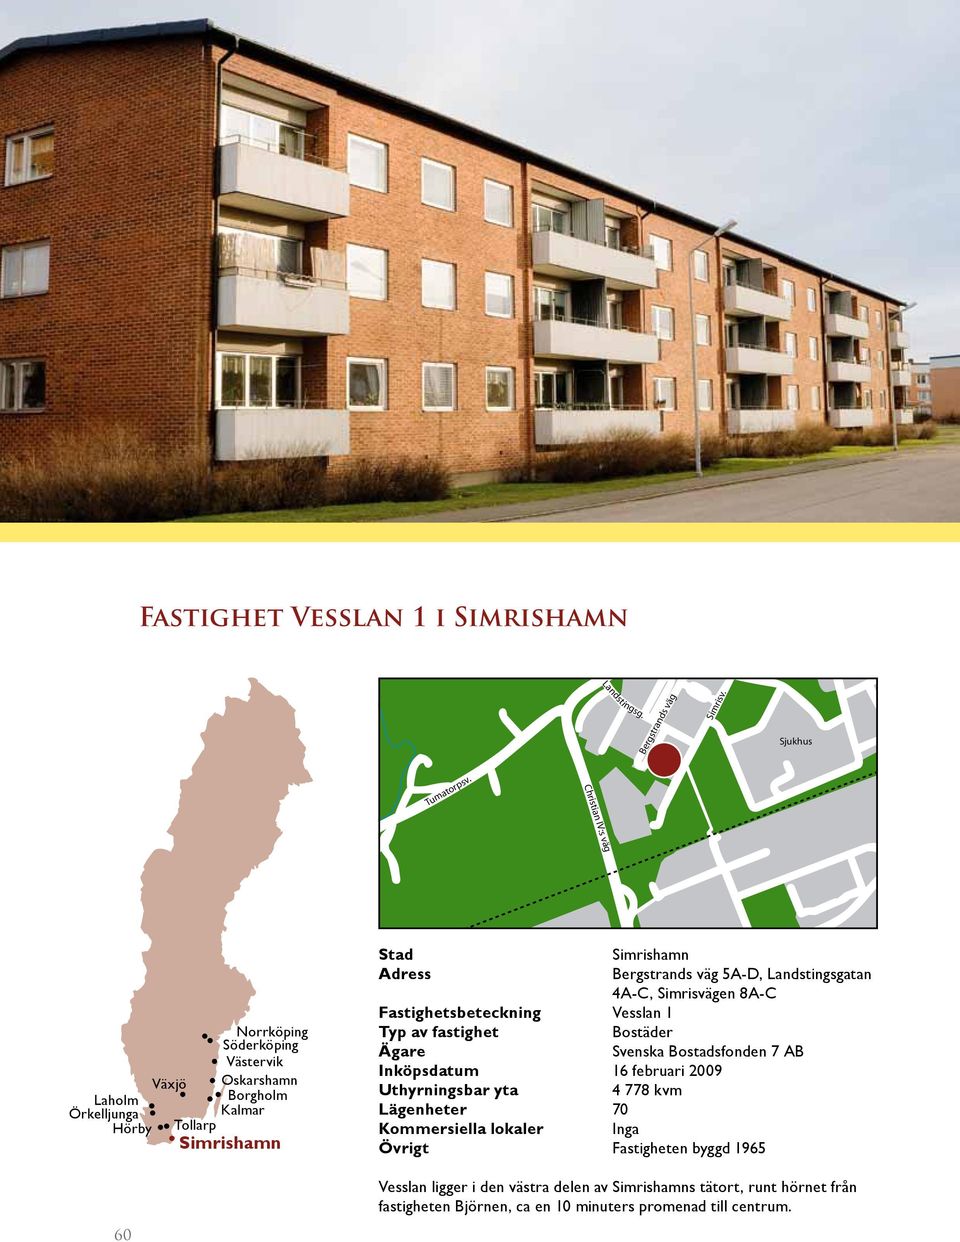 Inköpsdatum 16 februari 2009 4 778 kvm Lägenheter 70 Kommersiella lokaler Inga Övrigt Fastigheten byggd 1965